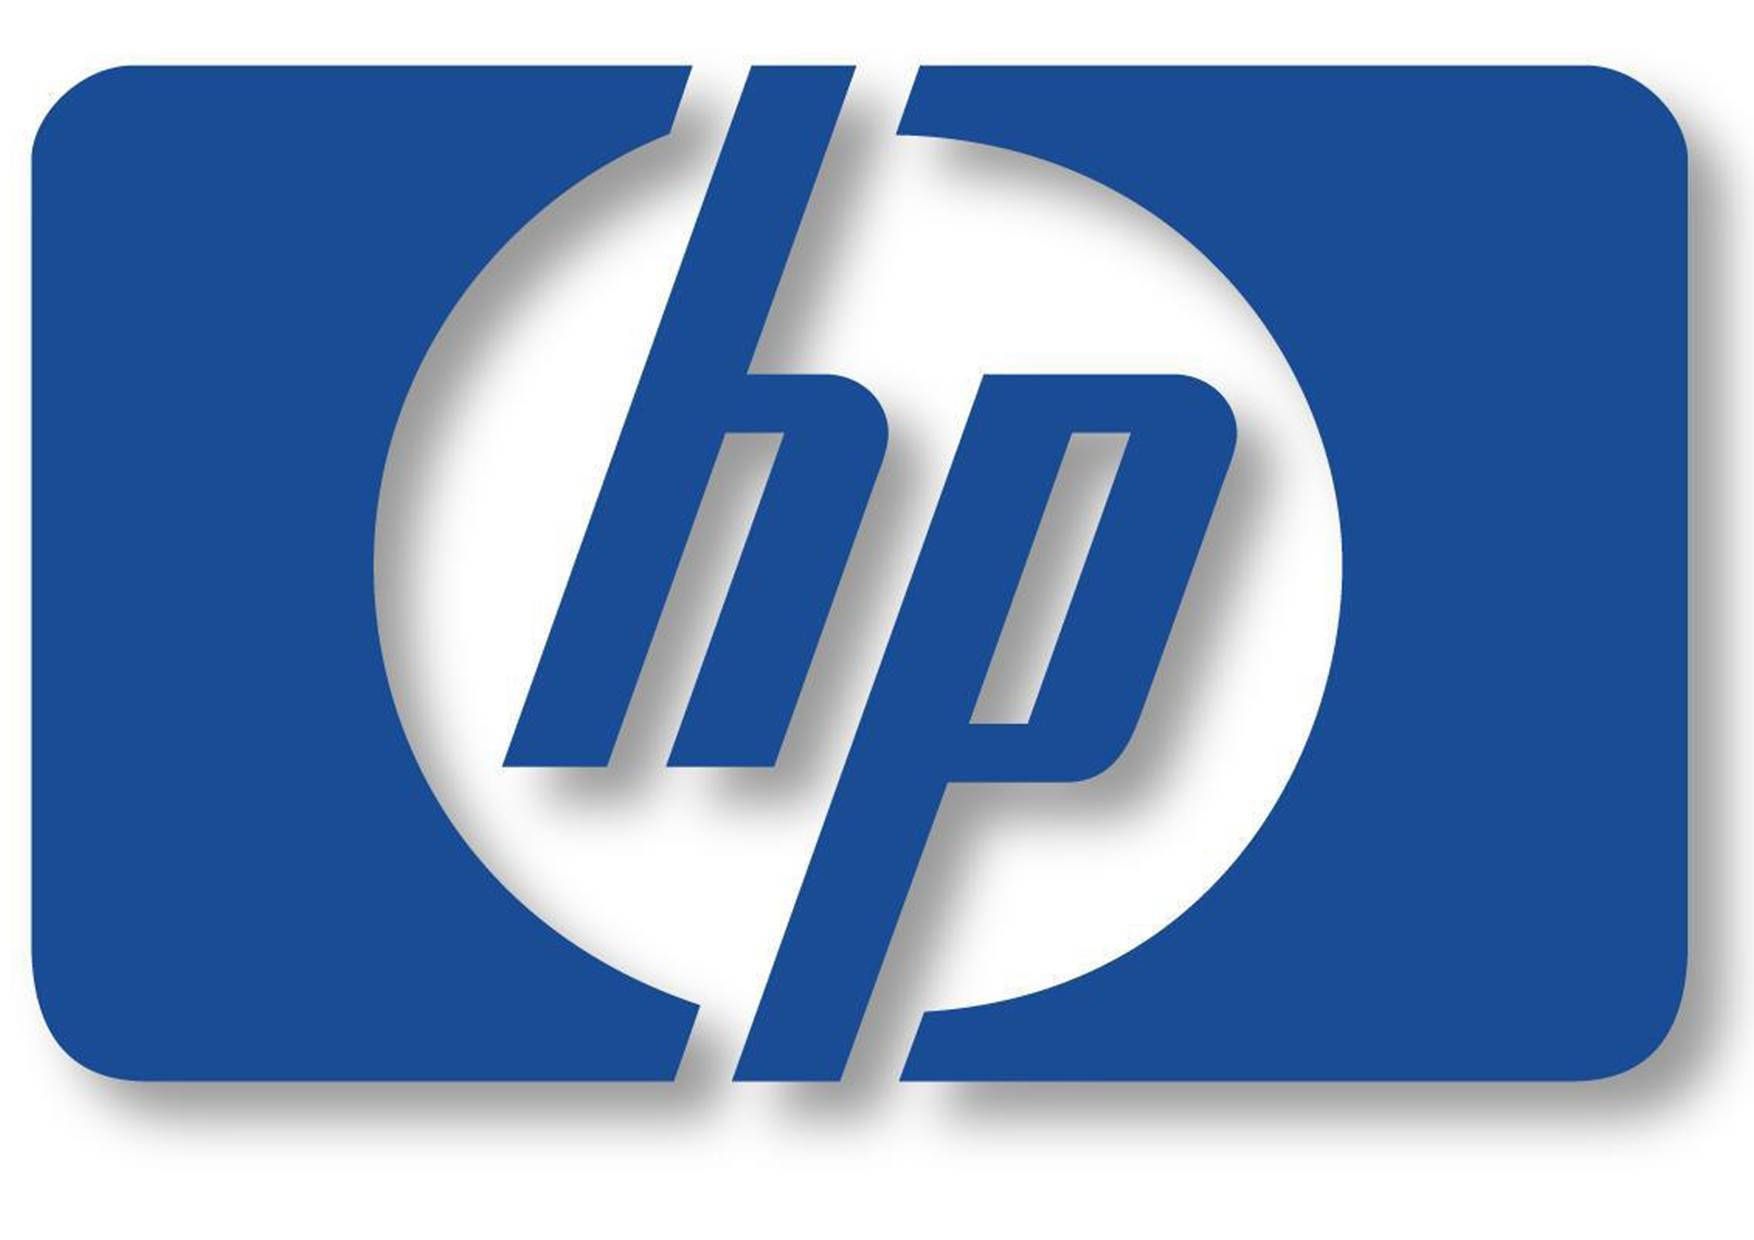 Hewlett Packard HP